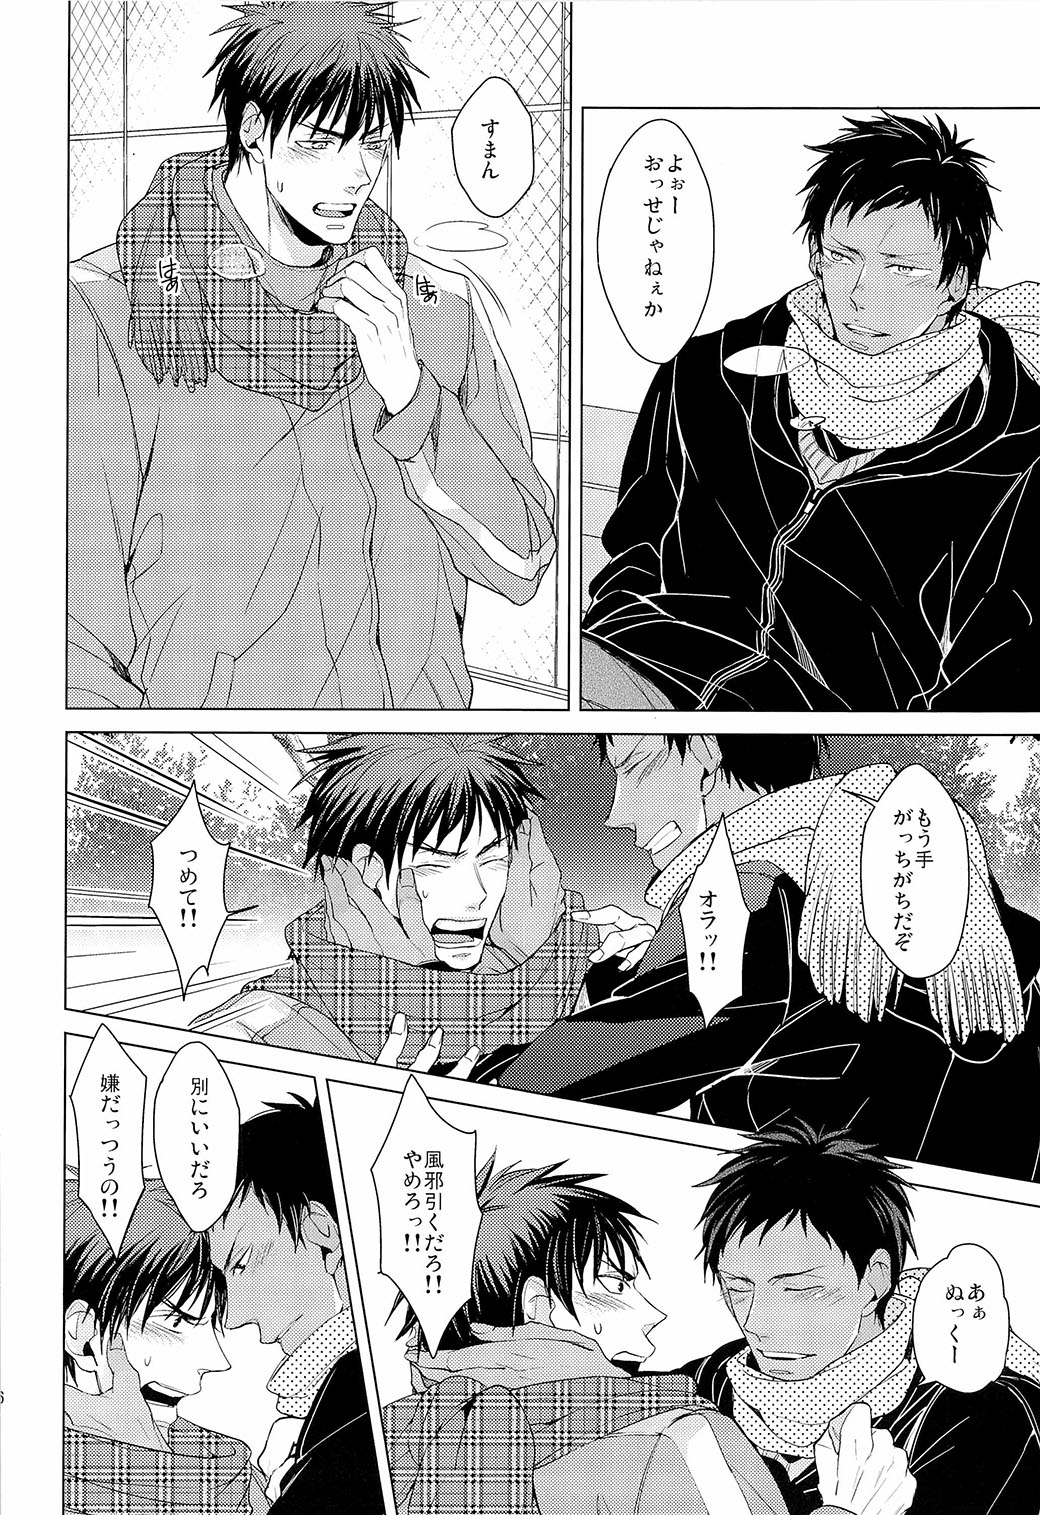 [ 2HB ( Kaneda) ] Find a light shadow (  Kuroko's Basketball ) page 6 full